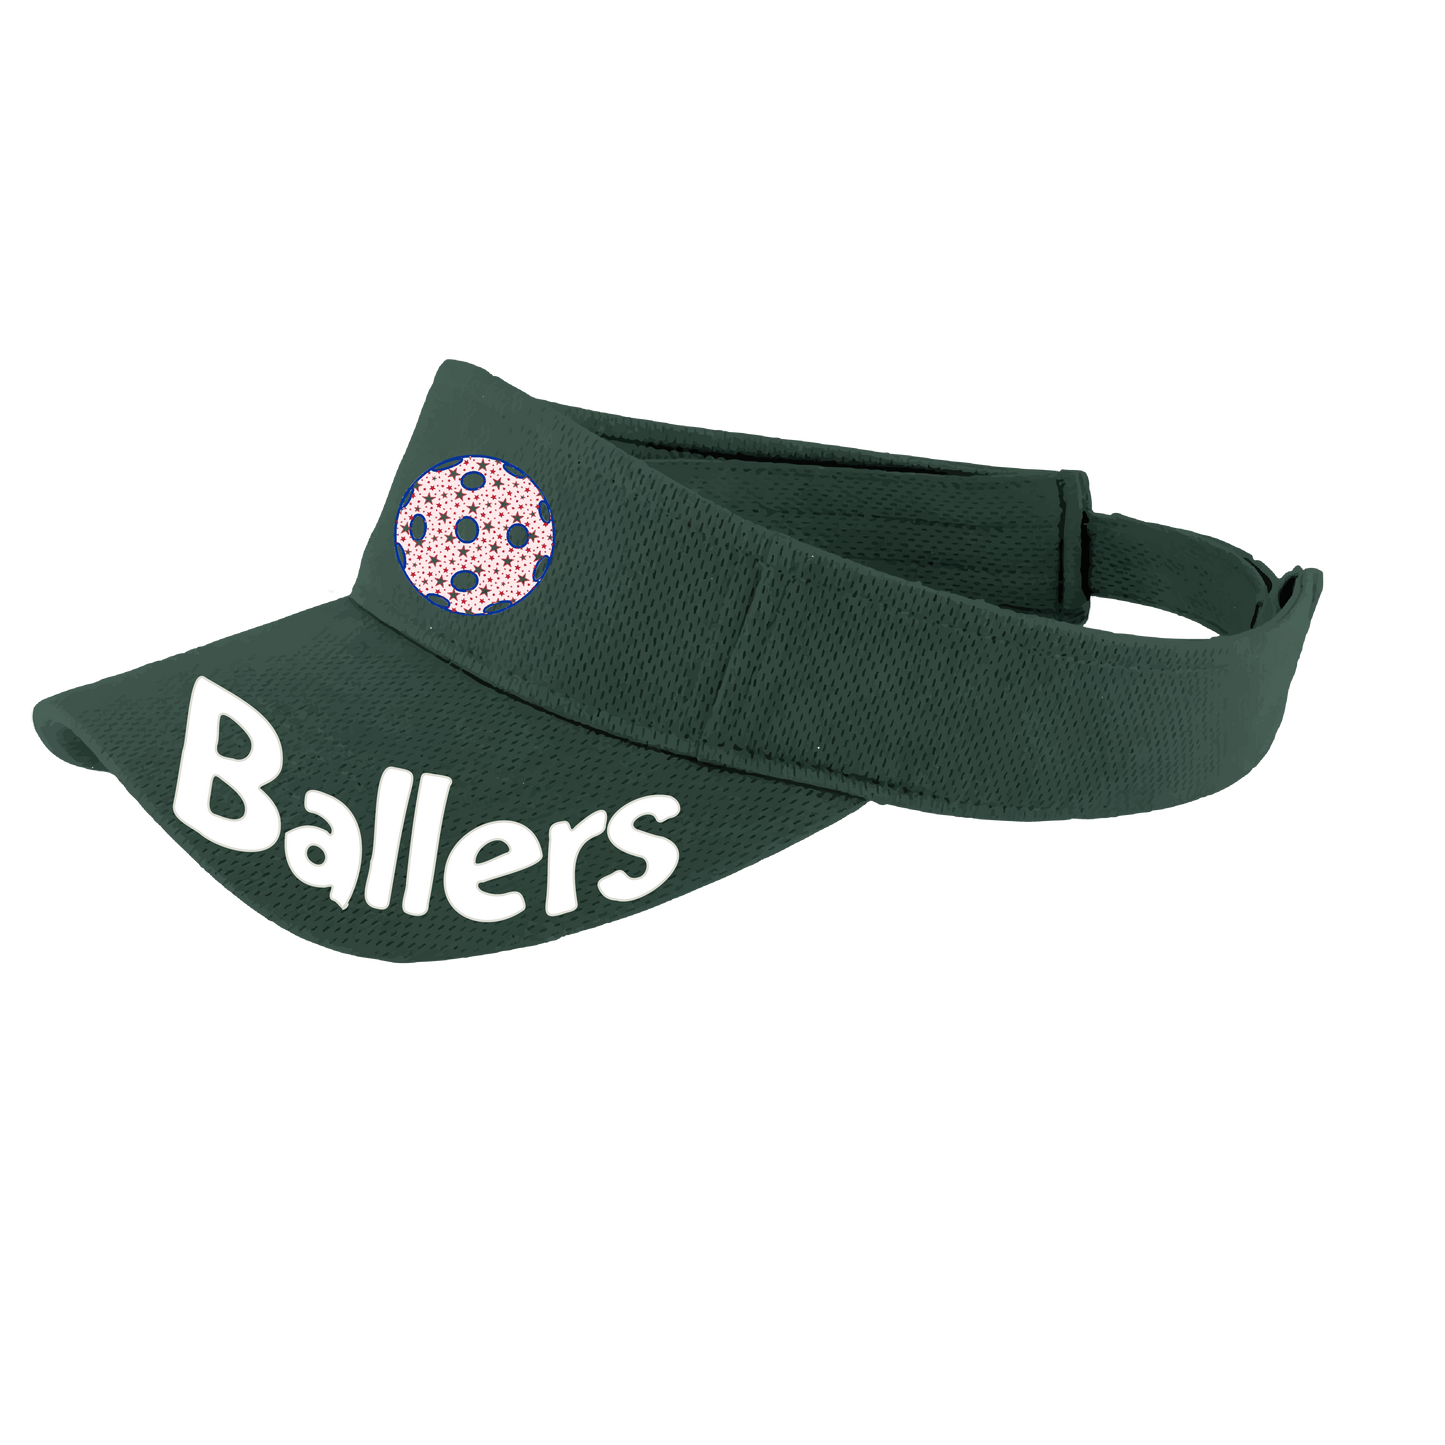 Ballers With Pickleballs (Customizable) | Pickleball Visors | Moisture Wicking 100% Polyester